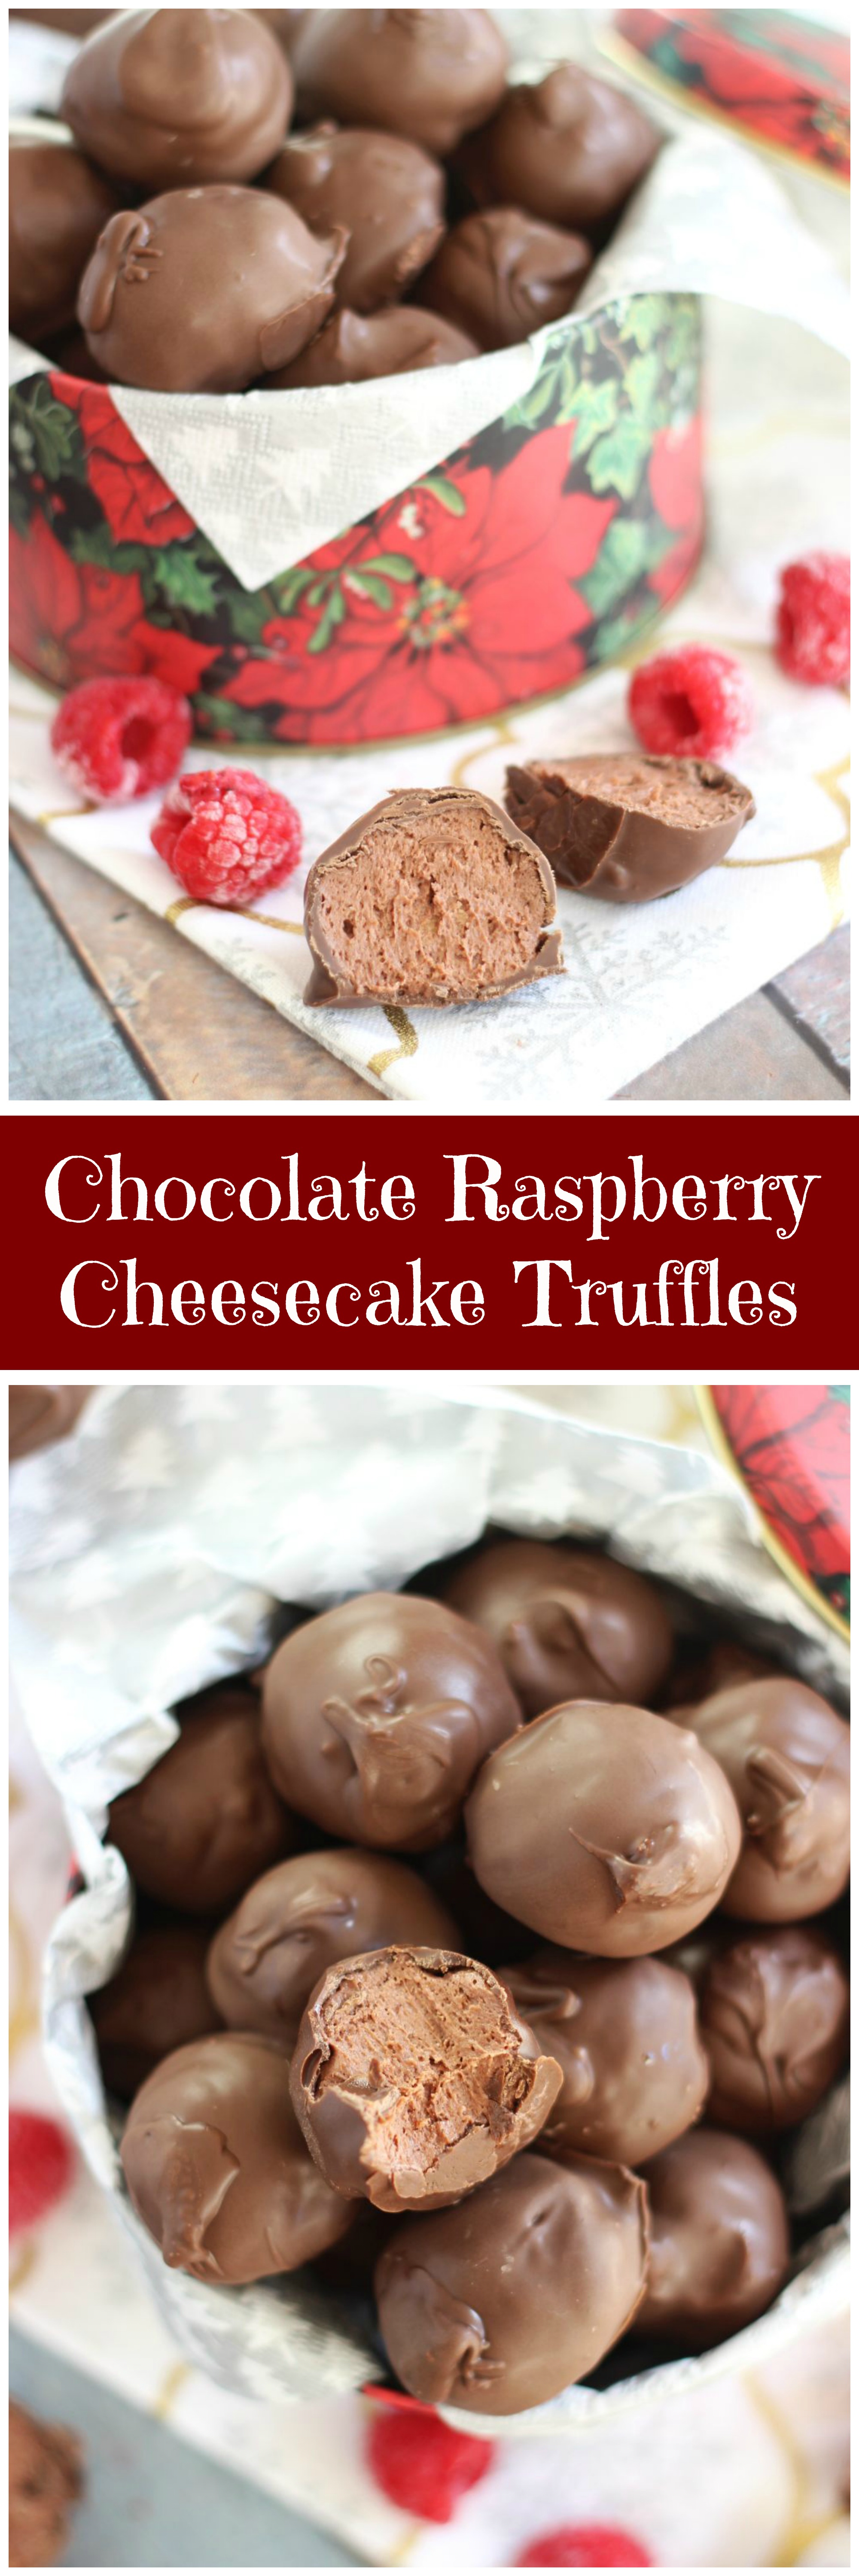 Chocolate Raspberry Cheesecake Truffles